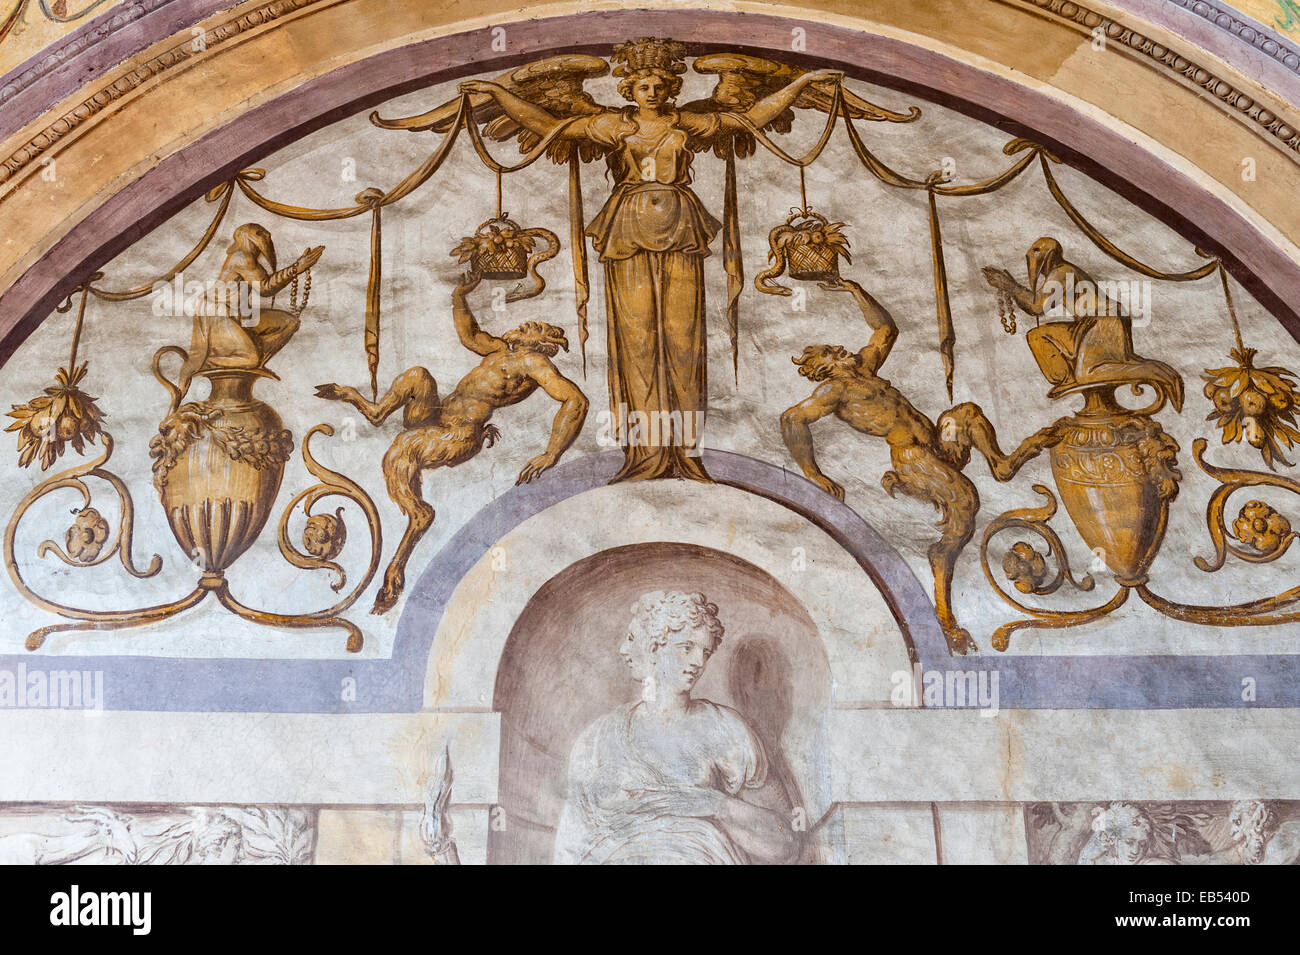 Un détail de l'intérieur décoré de fresques à la Villa Godi Malinverni 16c, Vicence, Italie Banque D'Images